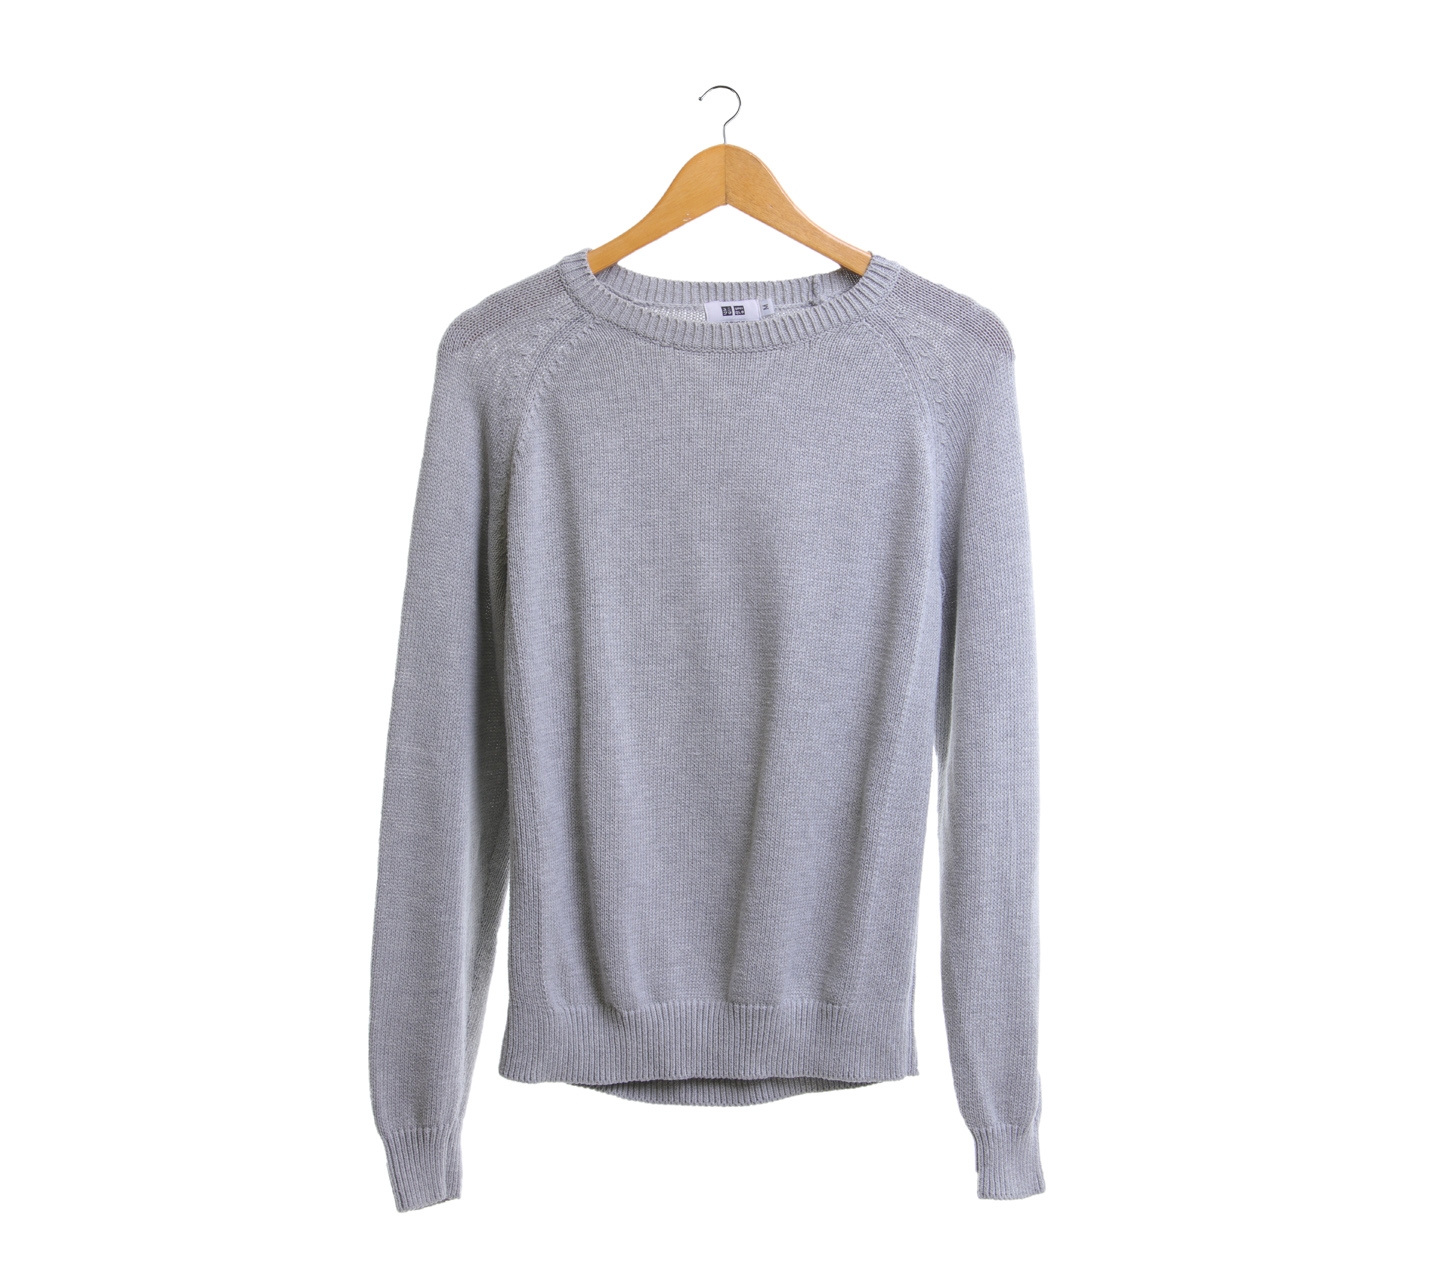 UNIQLO Grey Sweater